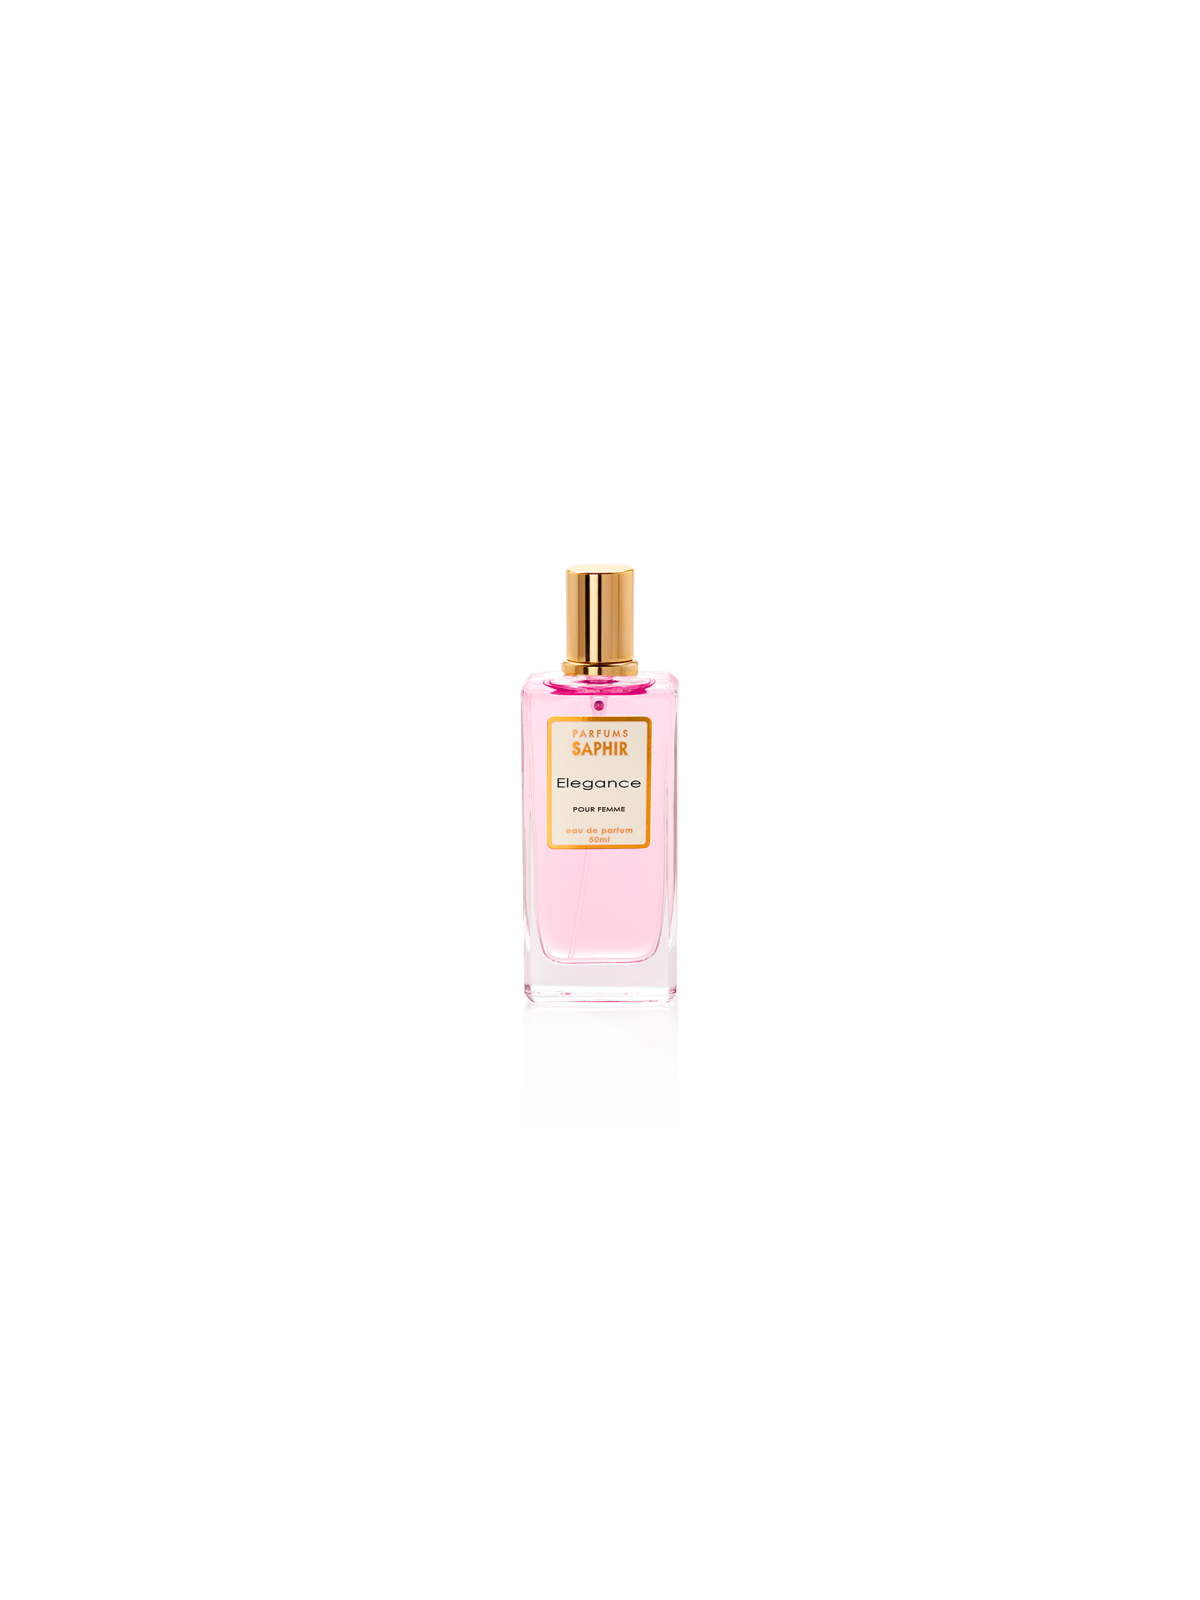 Comprar Perfume SAPHIR Elegance 50ml. en Perfumes para mujer por sólo 4,95 € o un precio específico de 4,95 € en Thalie Care